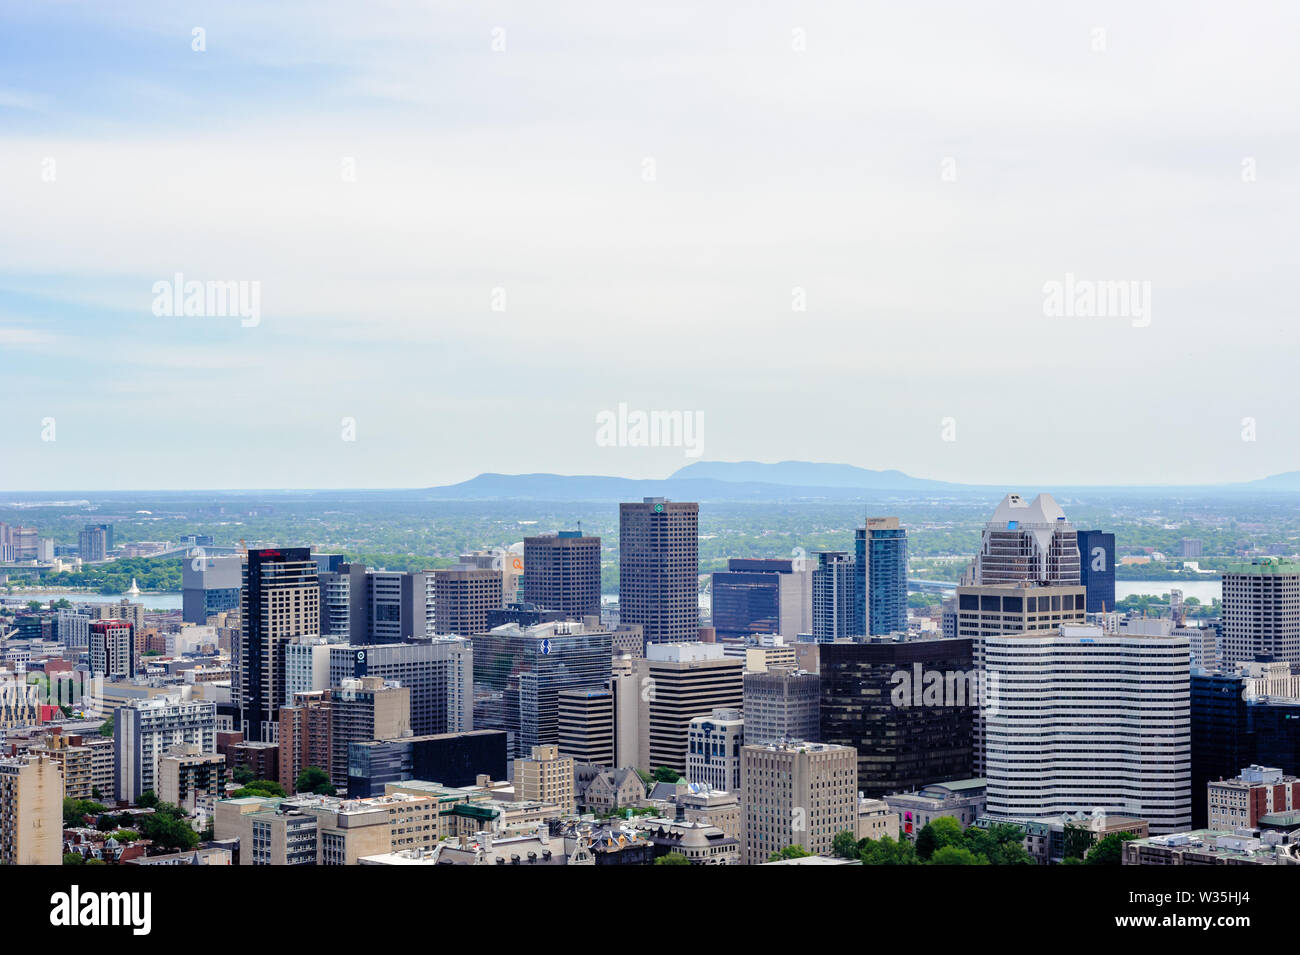 MONTREAL, Canadá - 16 de junio de 2018: parte del centro de la ciudad y de las montañas en el horizonte puede verse mirando al este desde Mount Royal. Foto de stock